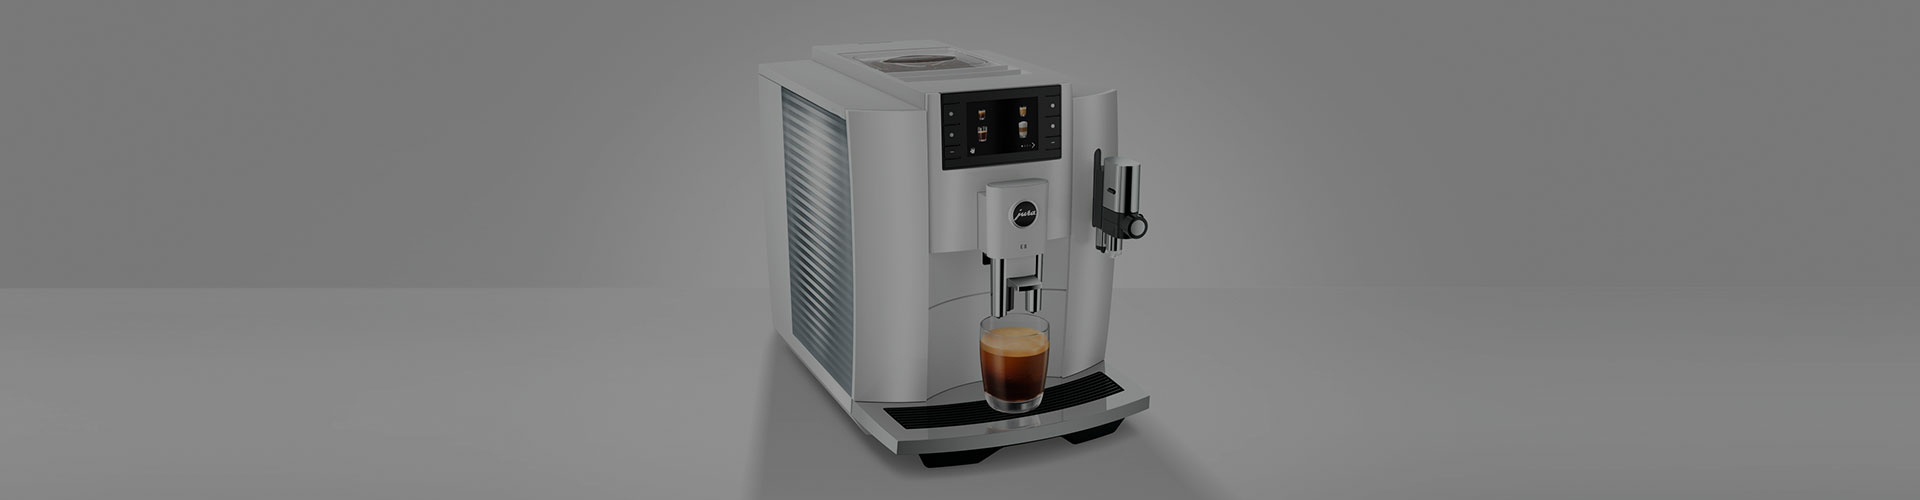 Jura E8 koffiemachine instellen